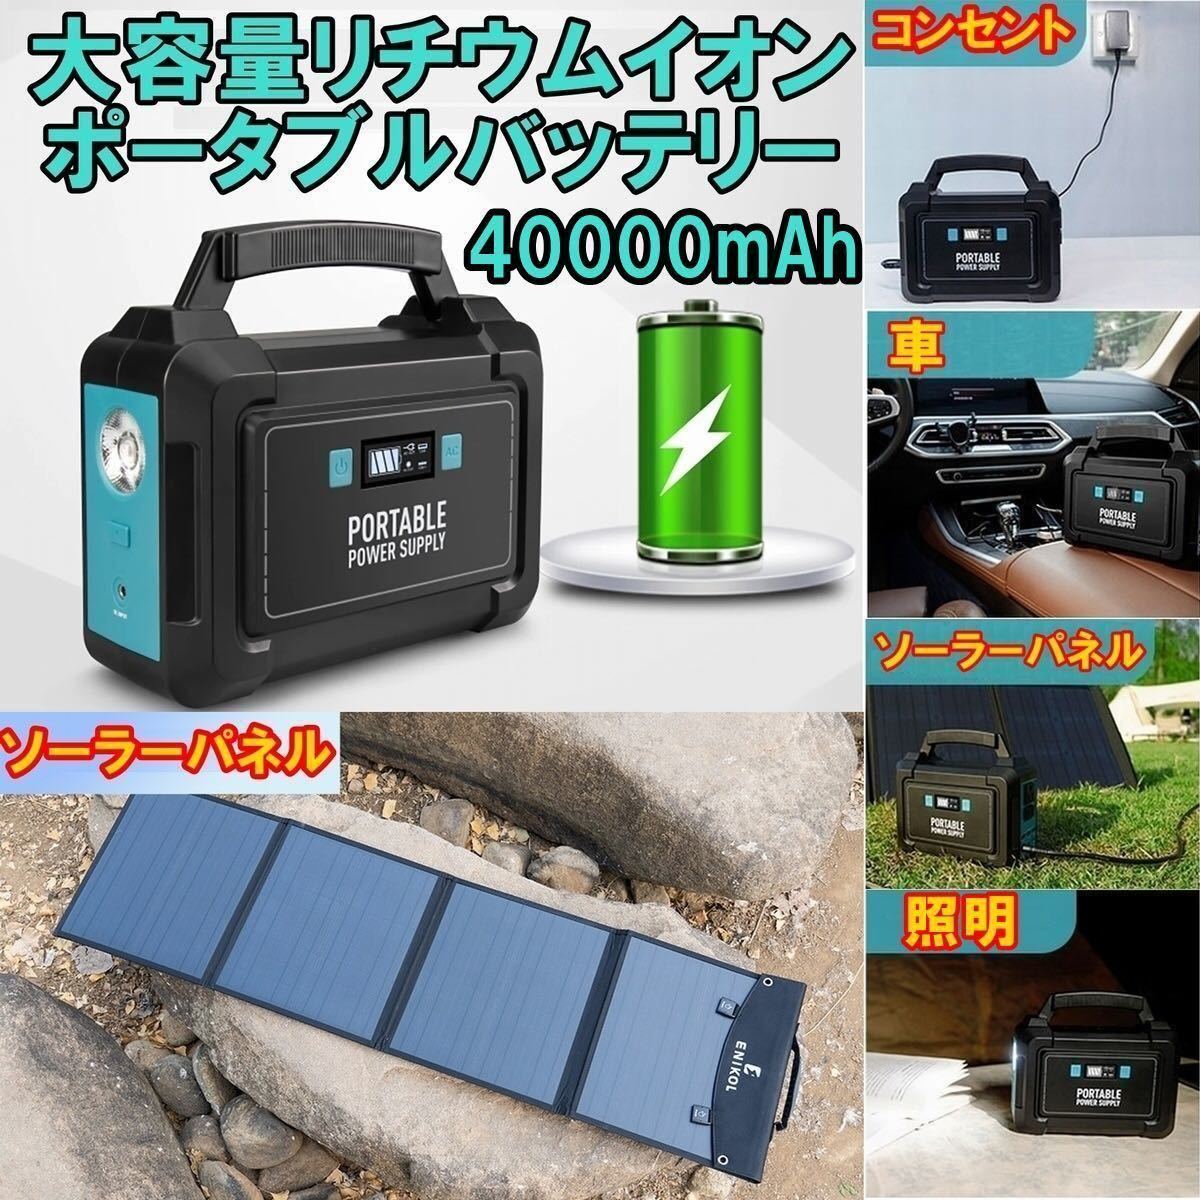 ポータブル電源+ソーラーパネル40W大容量バッテリー40000mAh/148Wh家庭